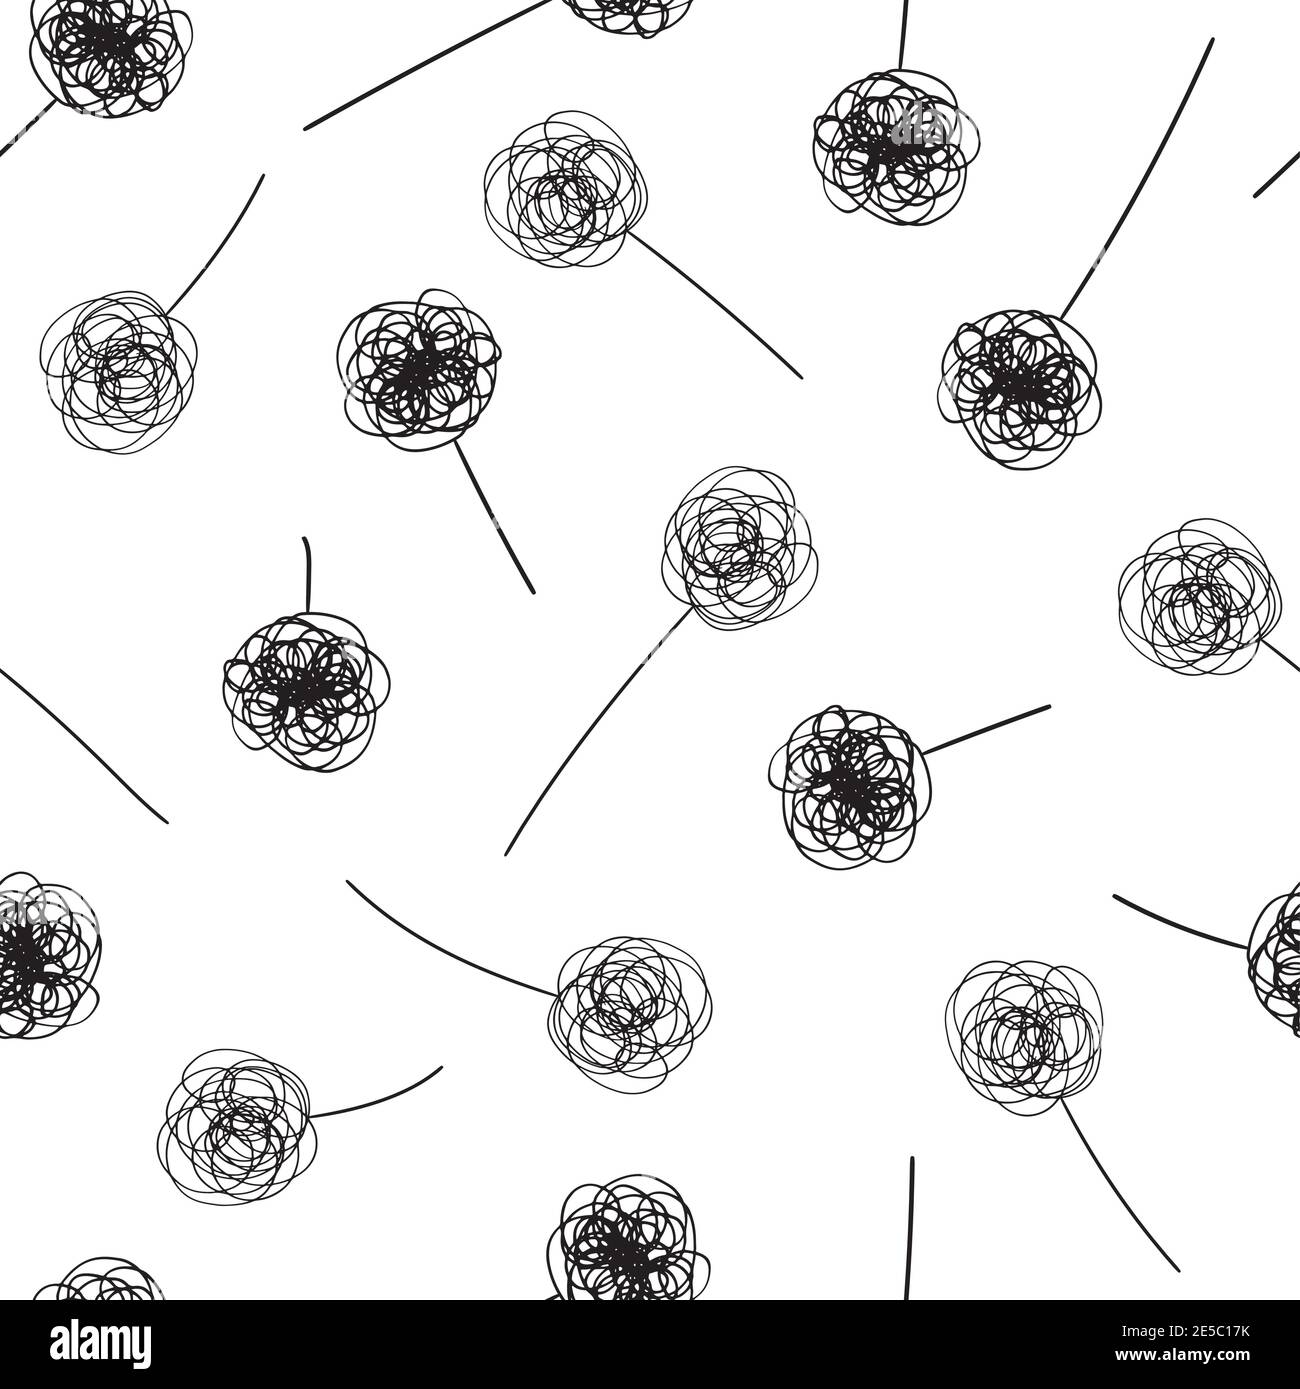 Gekritzelte Tinte Linie abstrakte Blumen und Stiele. Monochrome Vektor nahtlose Muster Hintergrund. Hintergrund mit kindlichen Zeichnung Doodle Stil verstreut Stock Vektor